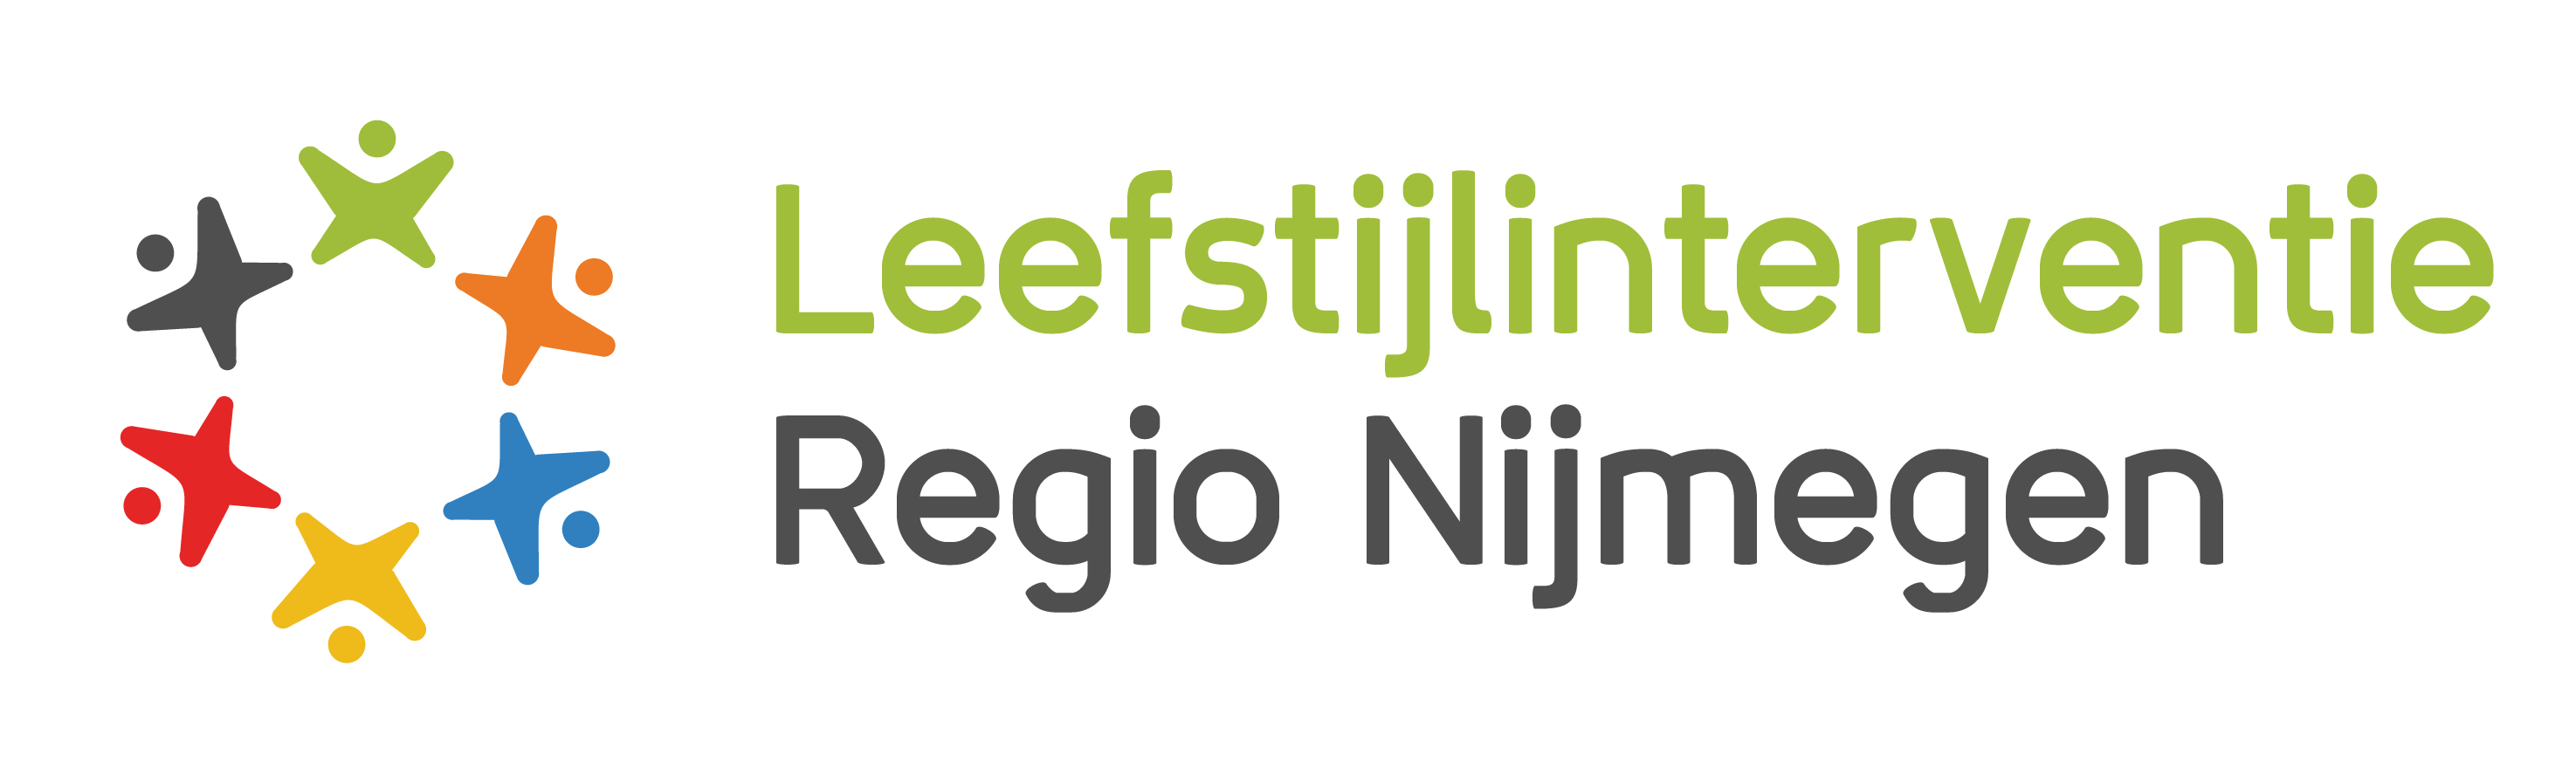 Leefstijl interventie regio Nijmegen - 